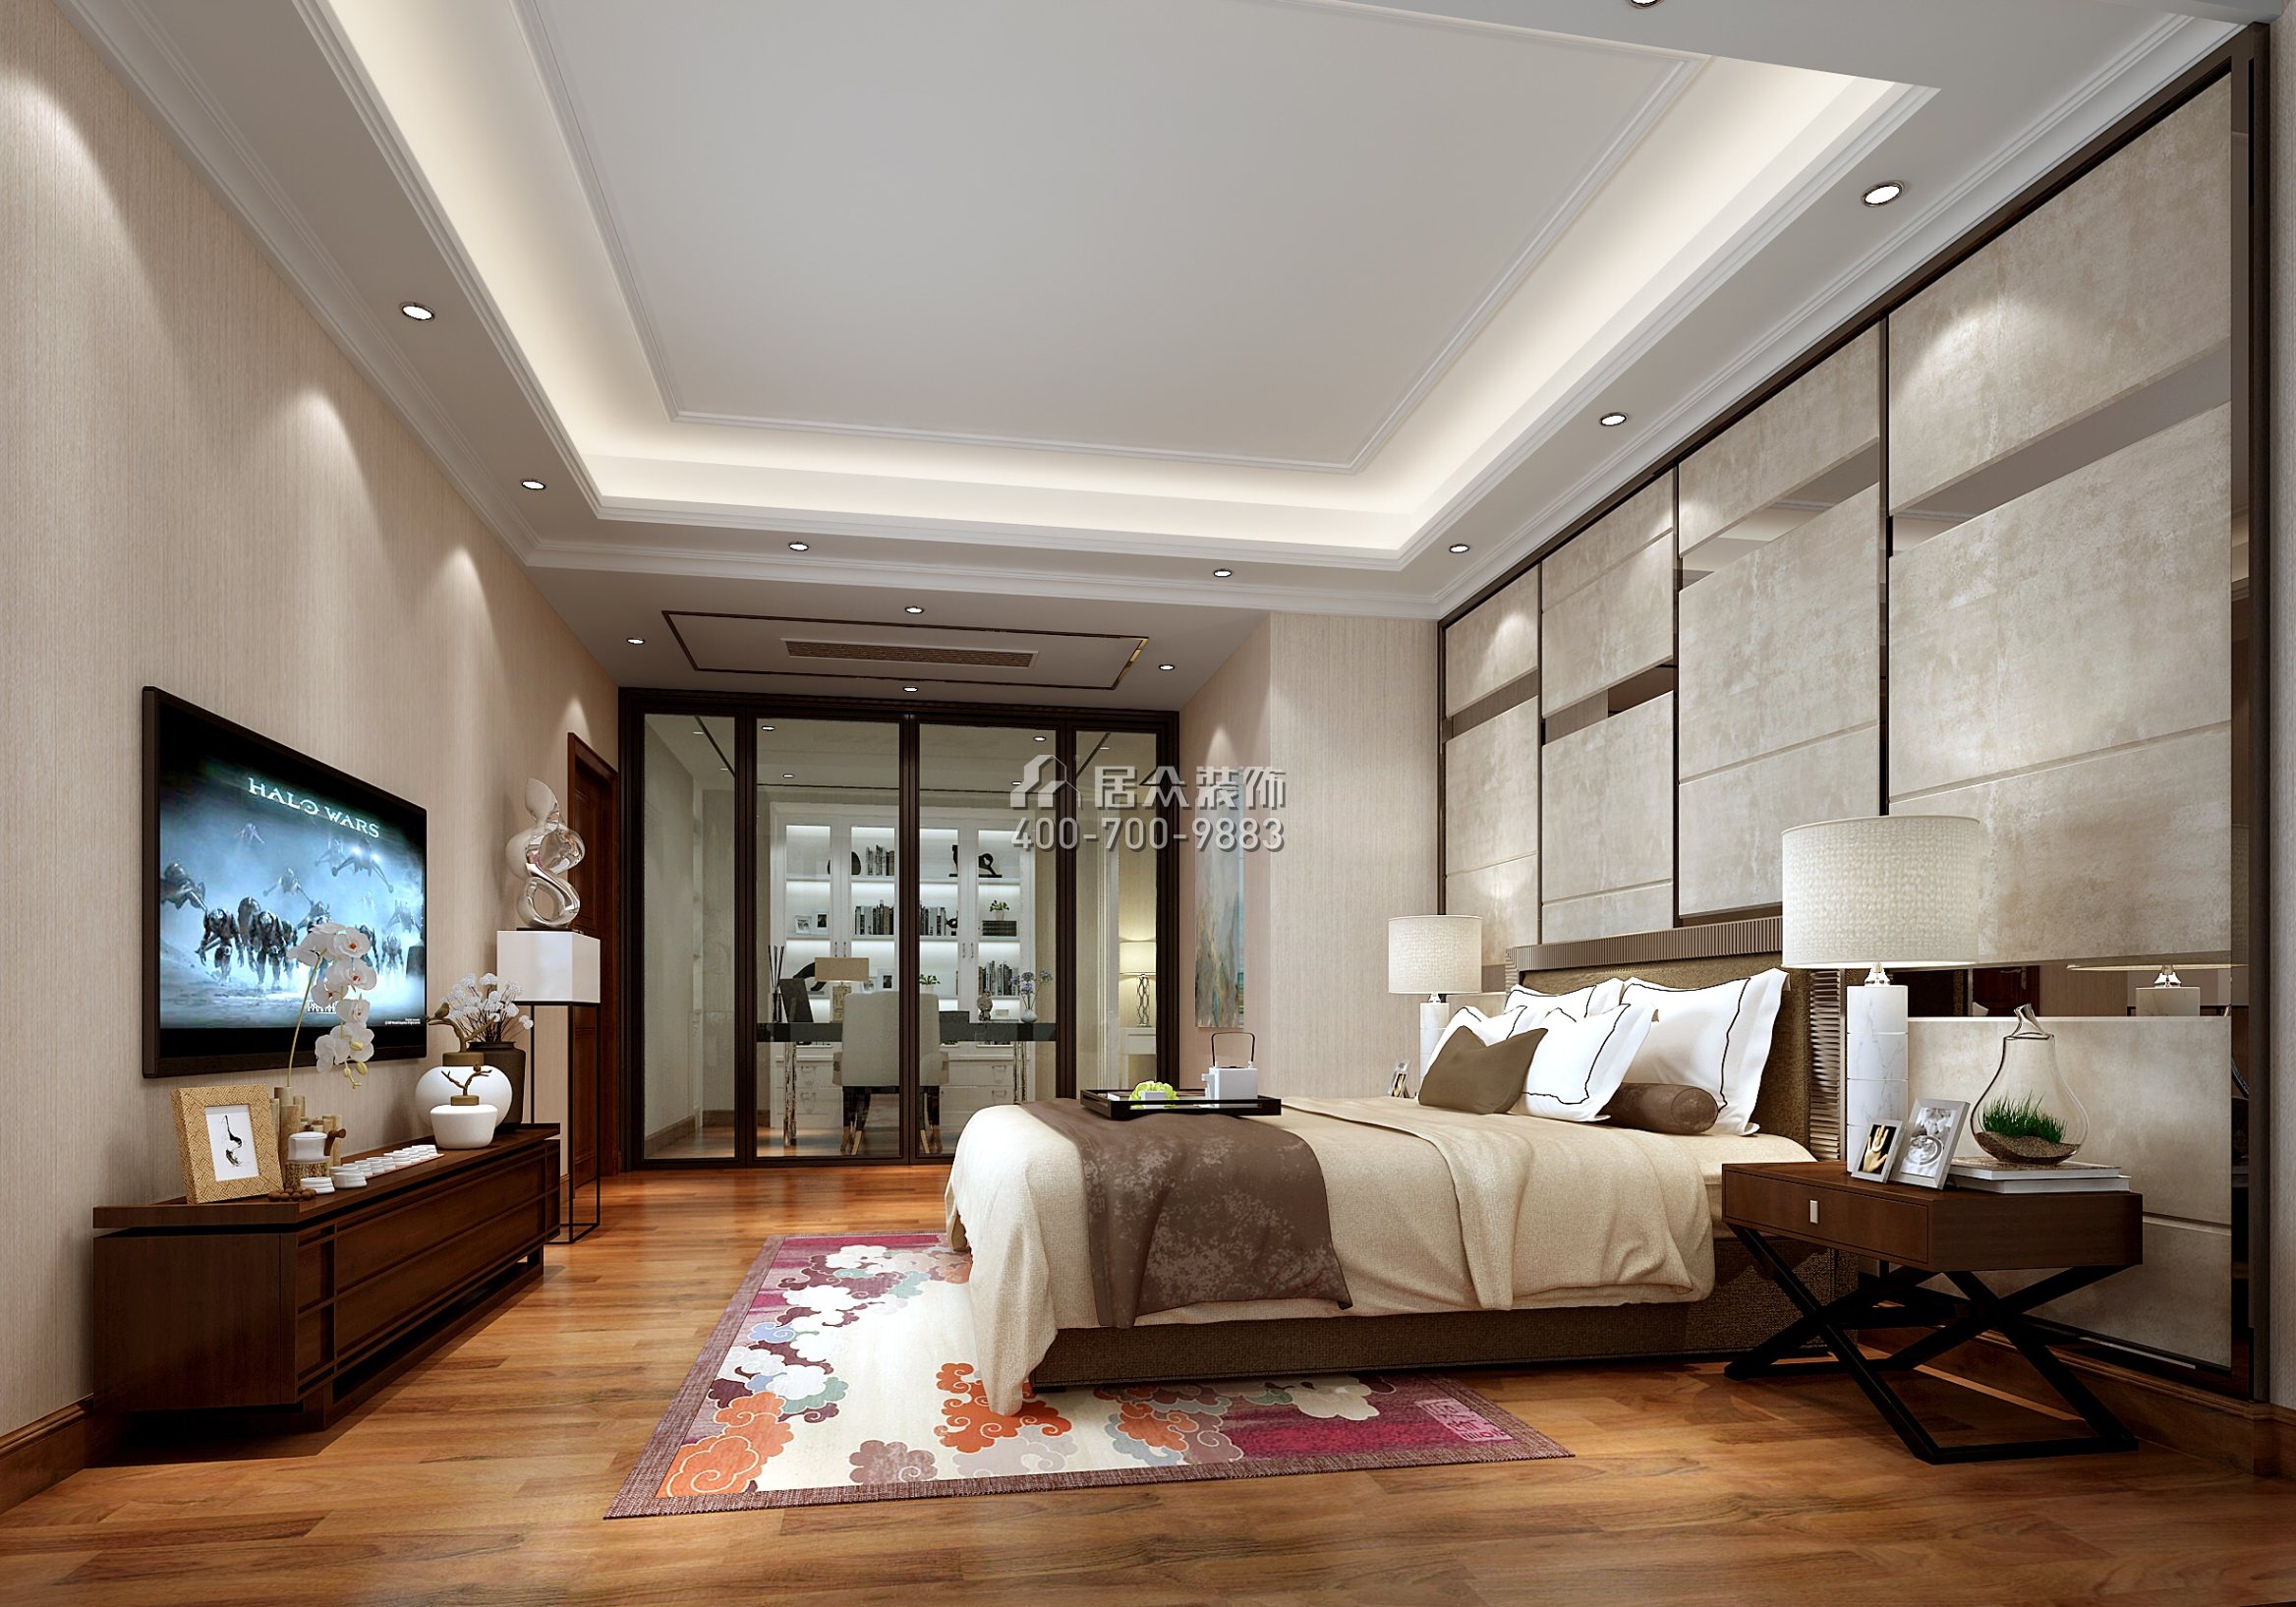 中洲中央公園二期210平方米混搭風格復式戶型臥室裝修效果圖